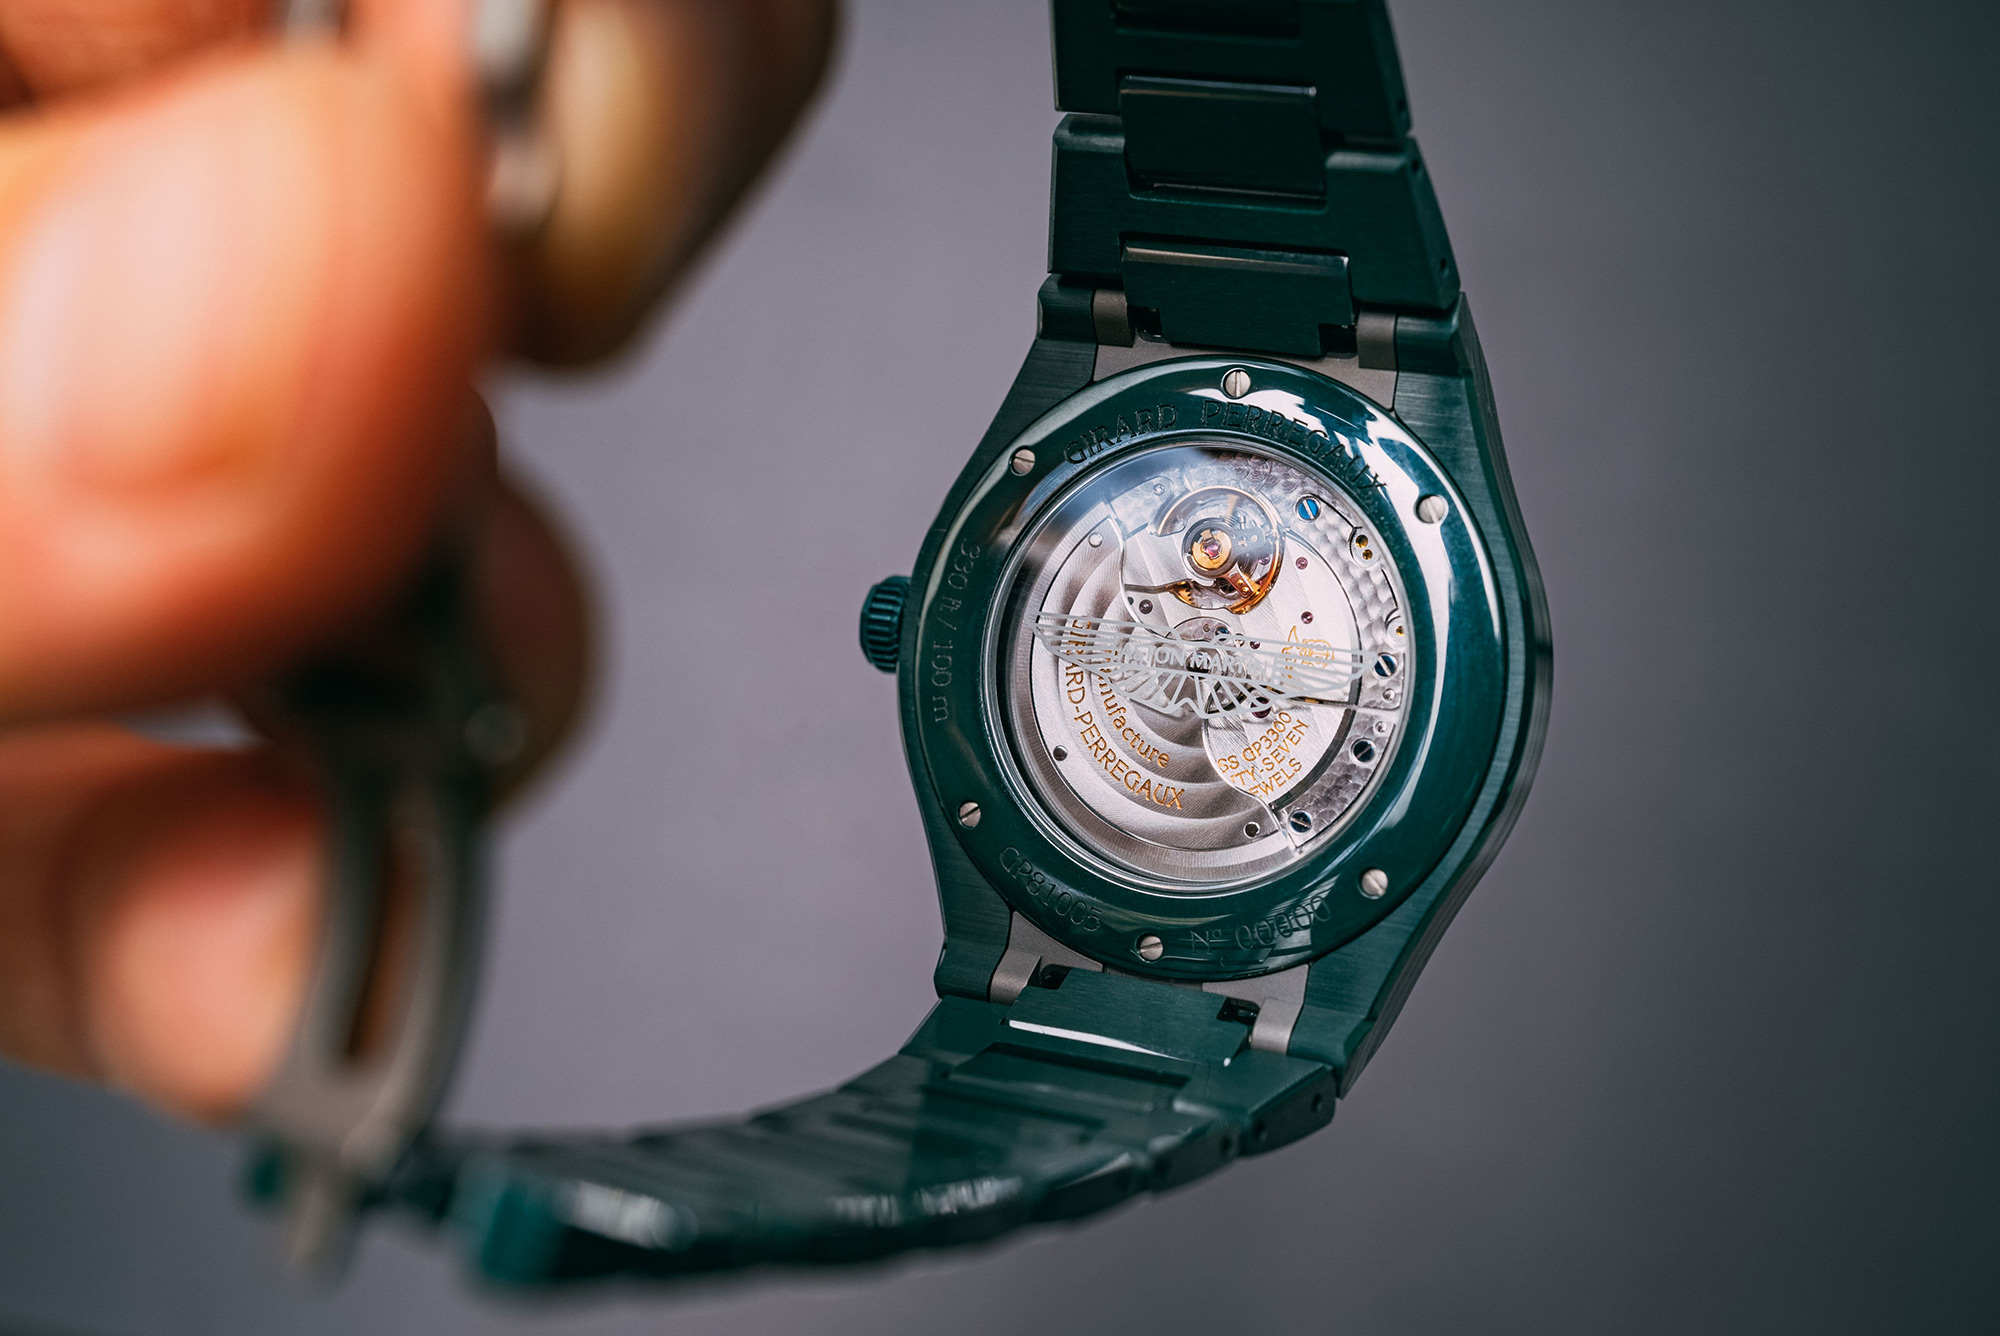 Обзор керамических часов Girard-Perregaux Laureato Green Ceramic Aston Martin Edition